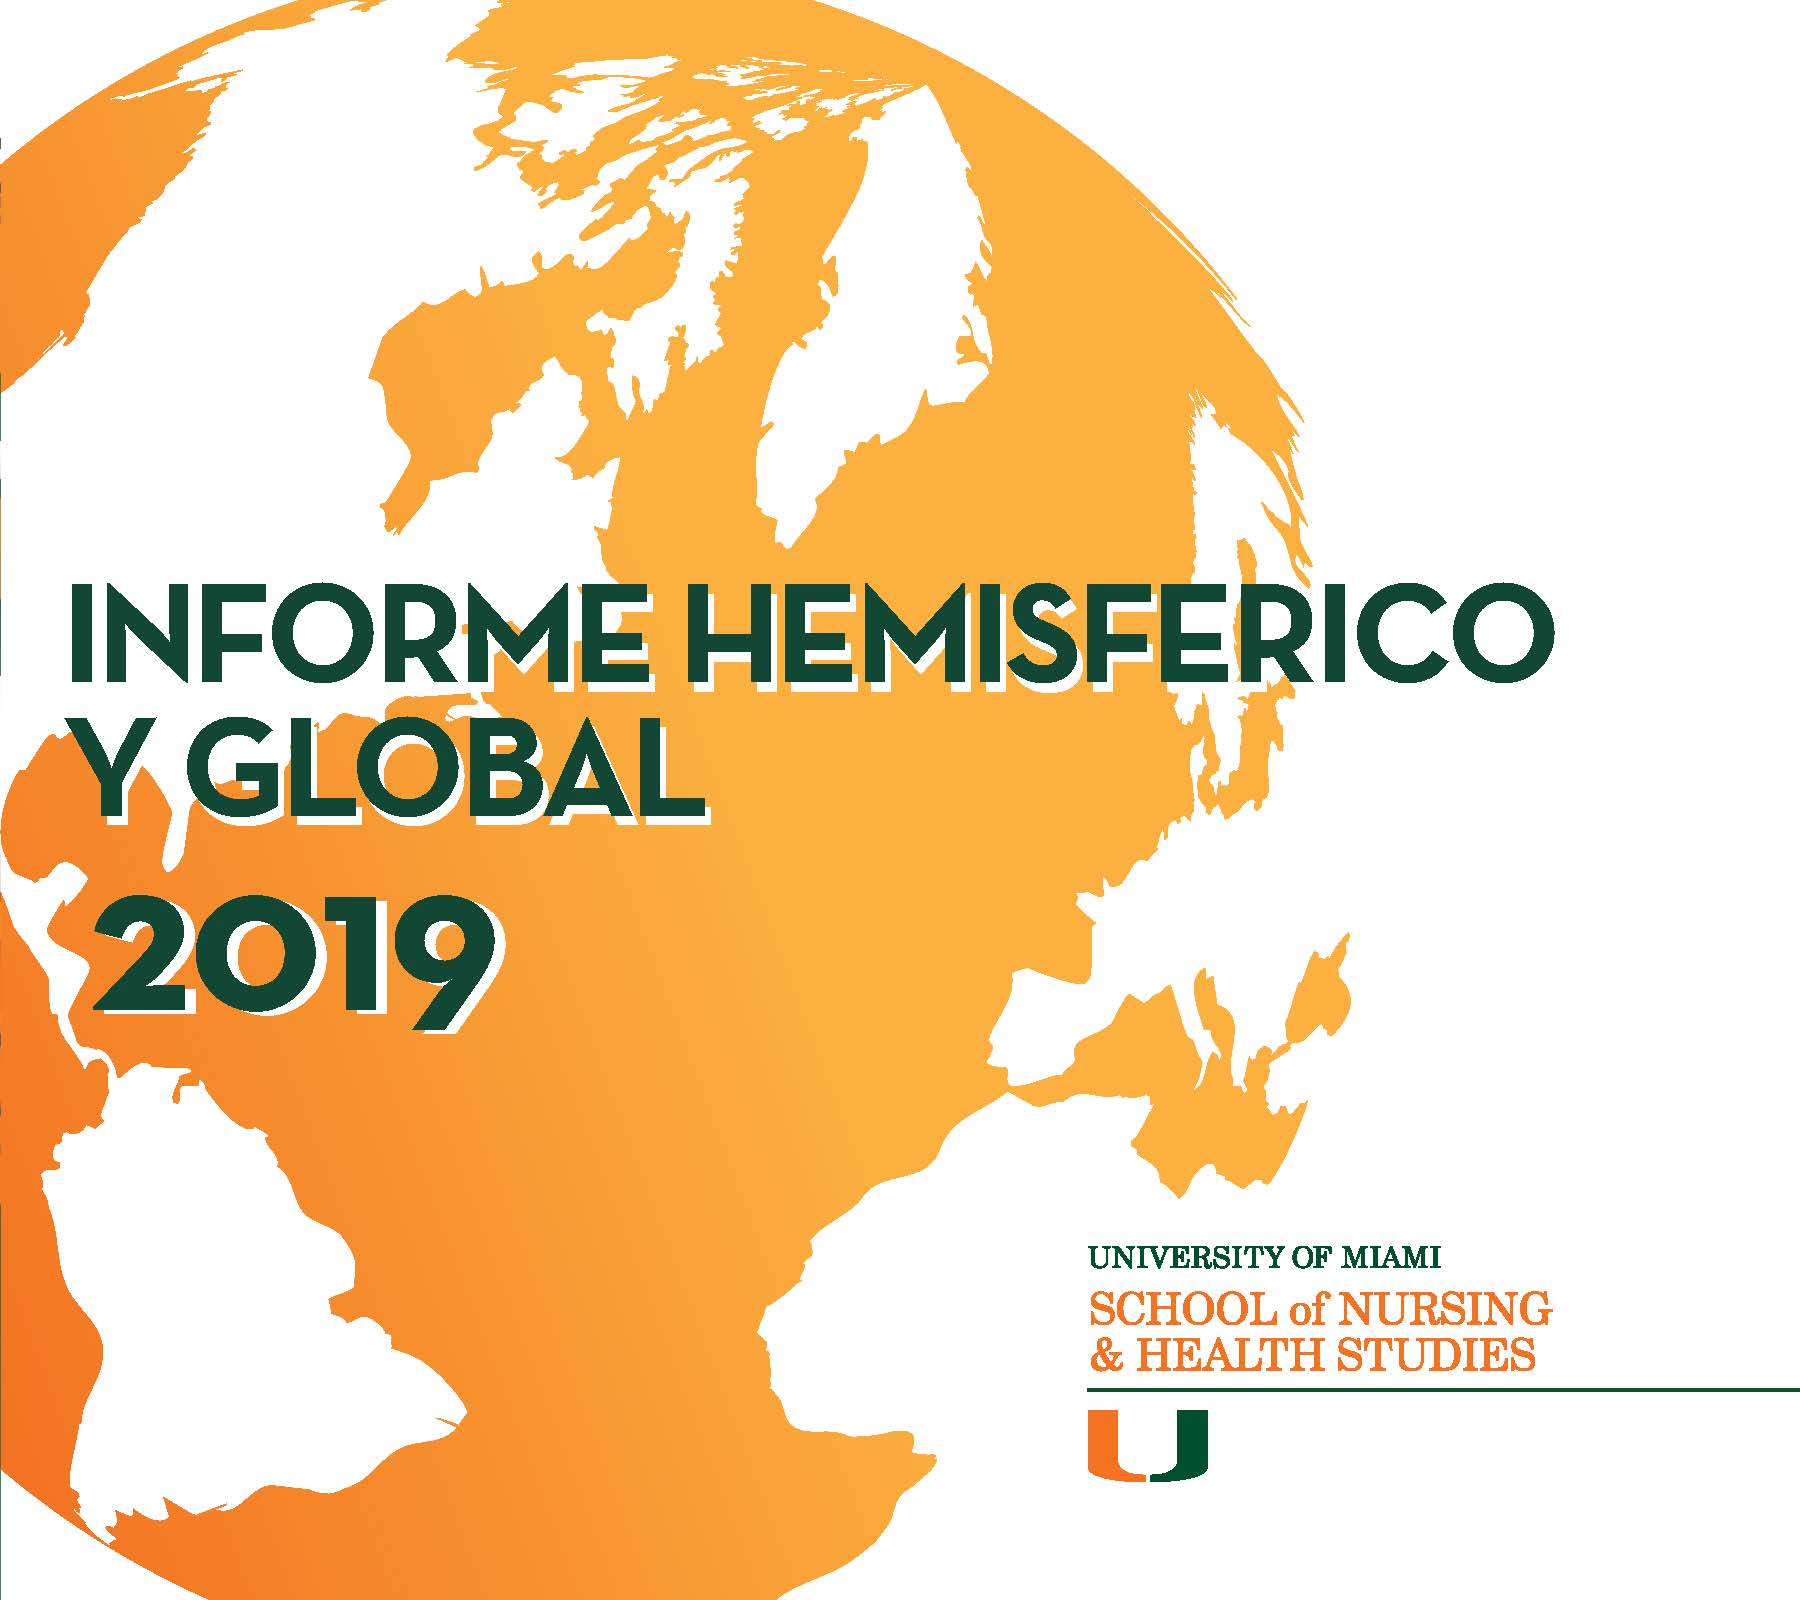 Informe Hemisferico Y Global 2019